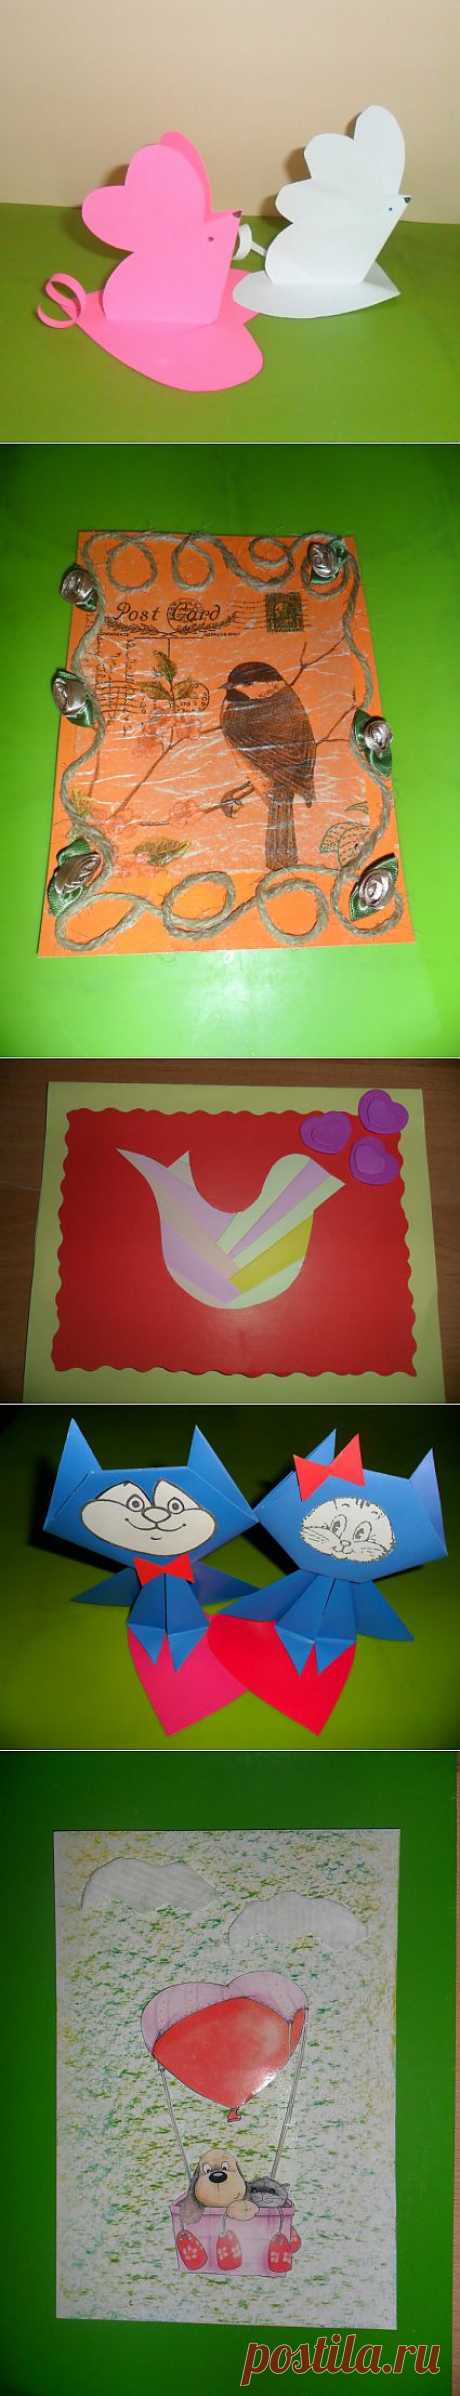 «Валентинки, валентинки, валентиночки» (творческие работы детей подготовительной группы) - Для воспитателей детских садов - Мааам.ру